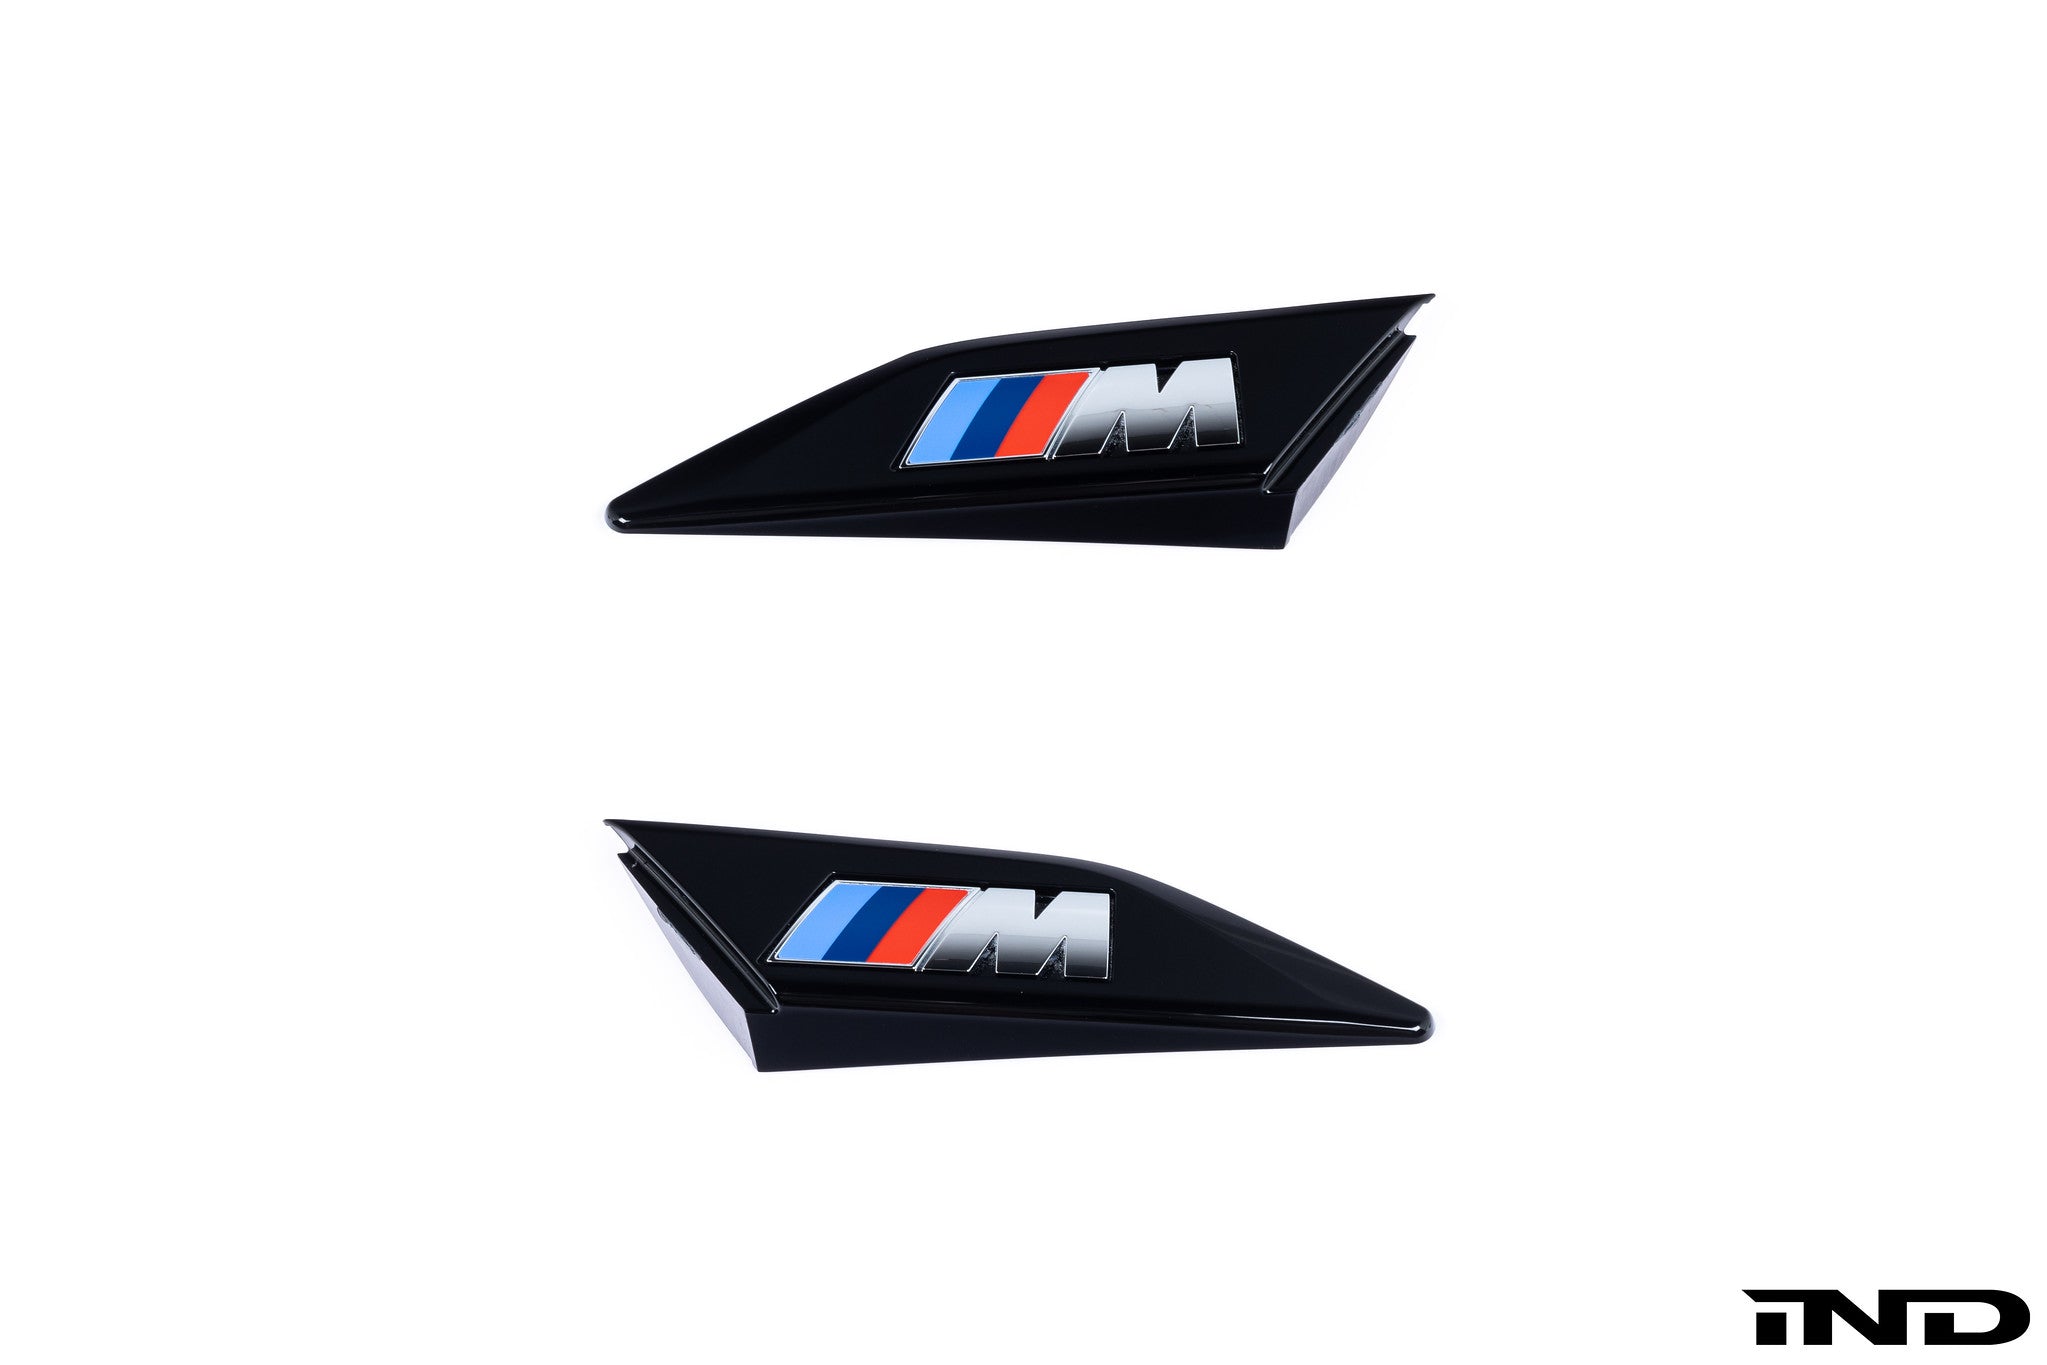 BMW M Plakette Emblem Badge für Felgen & Lenkrad – 10er Set